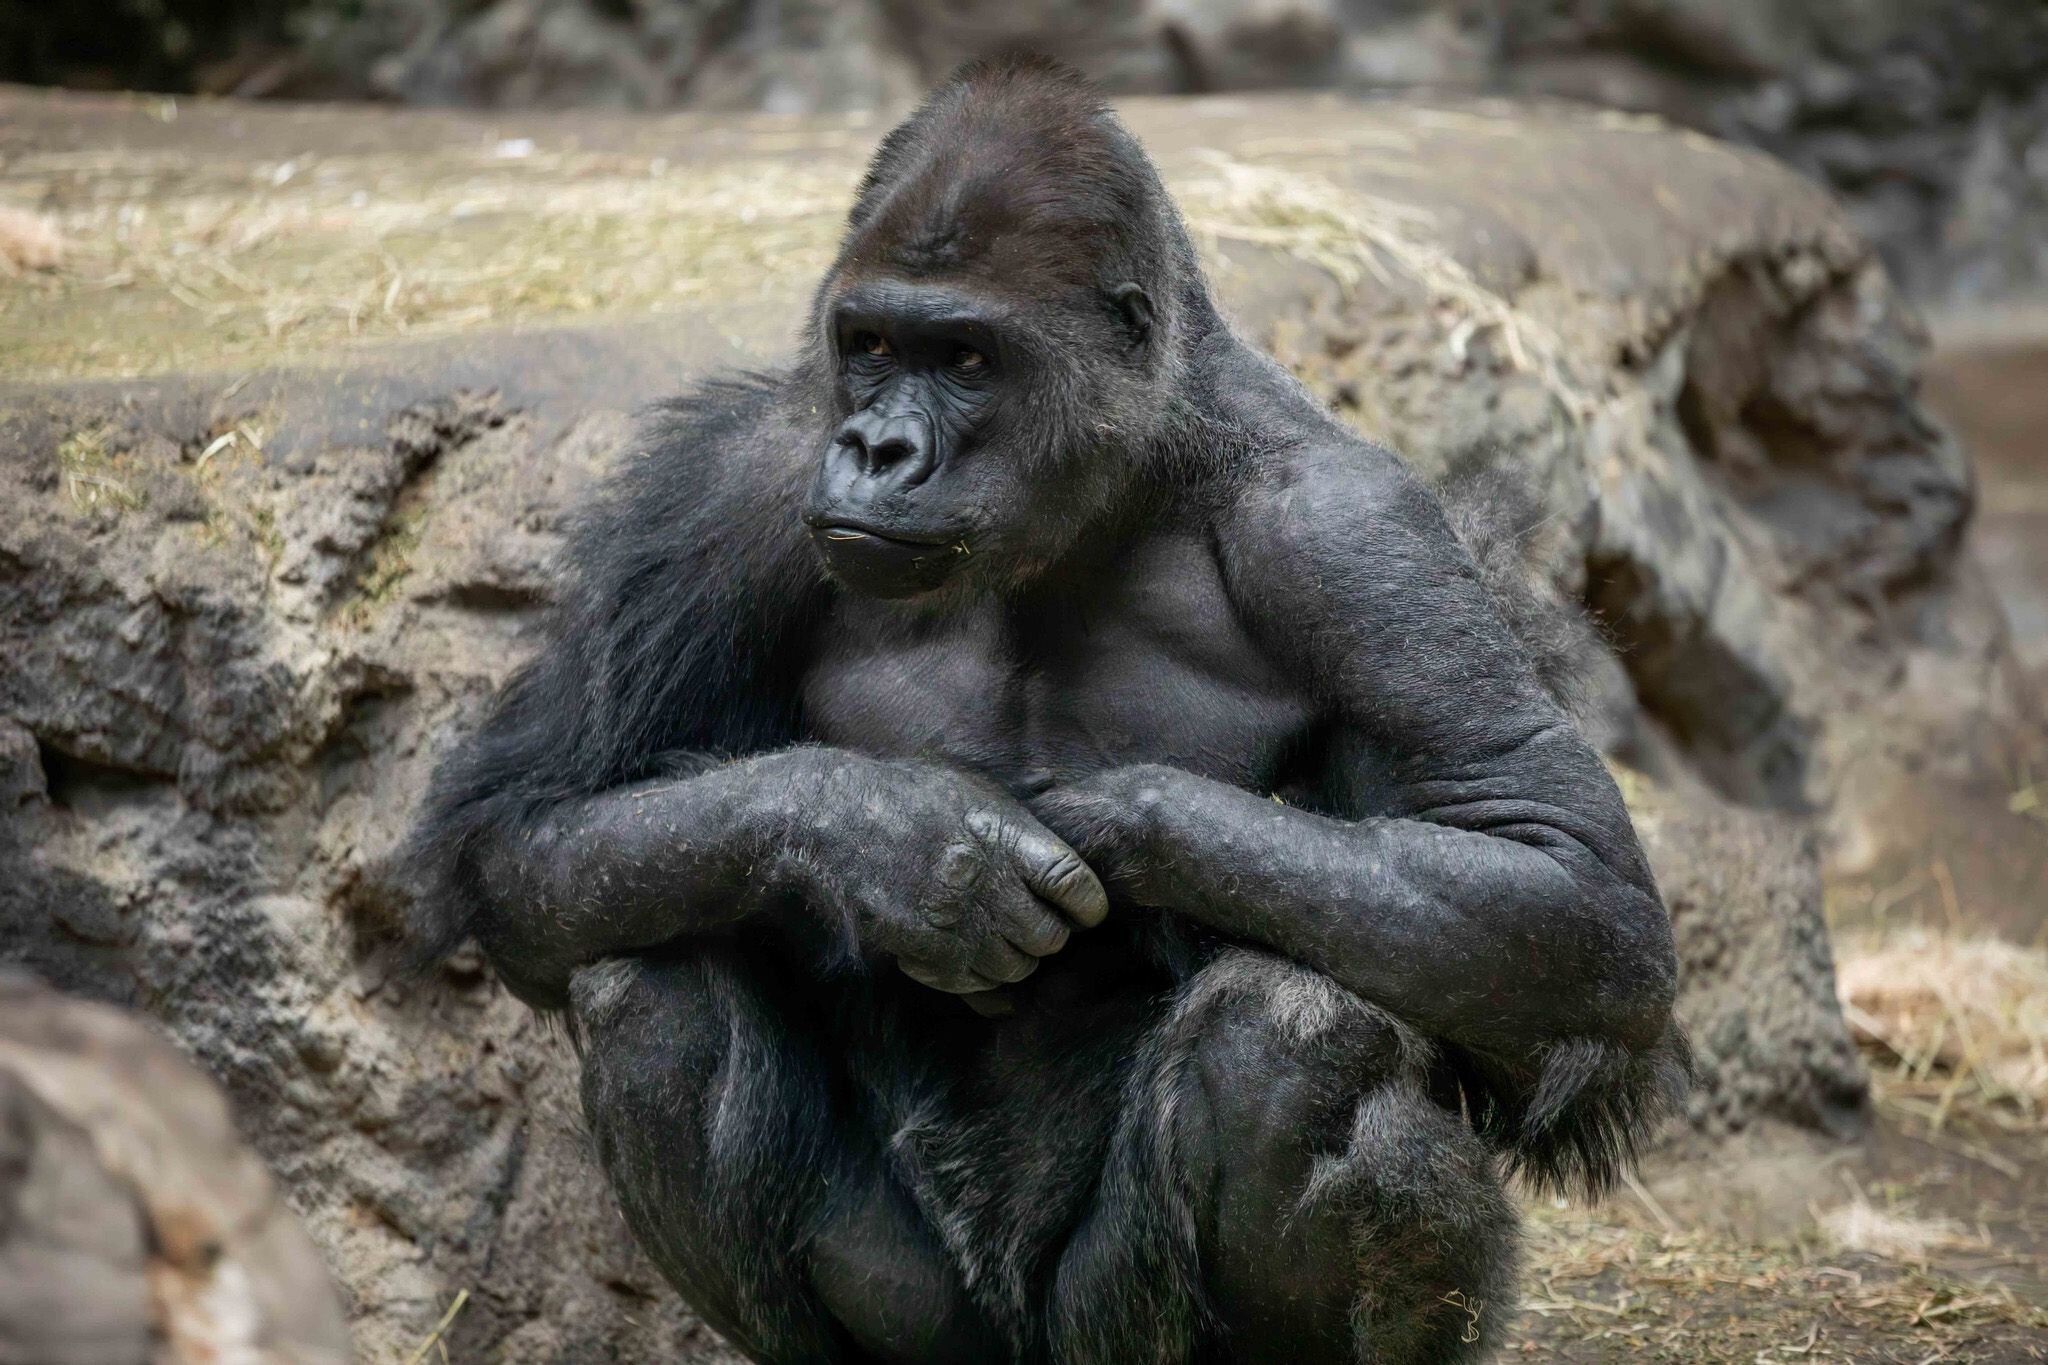 Koga murió a causa de un evento cardíaco, según informaron las autoridades del zoológico. (Facebook/The Buffalo Zoo)Koga, gorilas, animales, mascotas, muerte, zoológicos, Nueva York, Estados Unidos, primates, simios